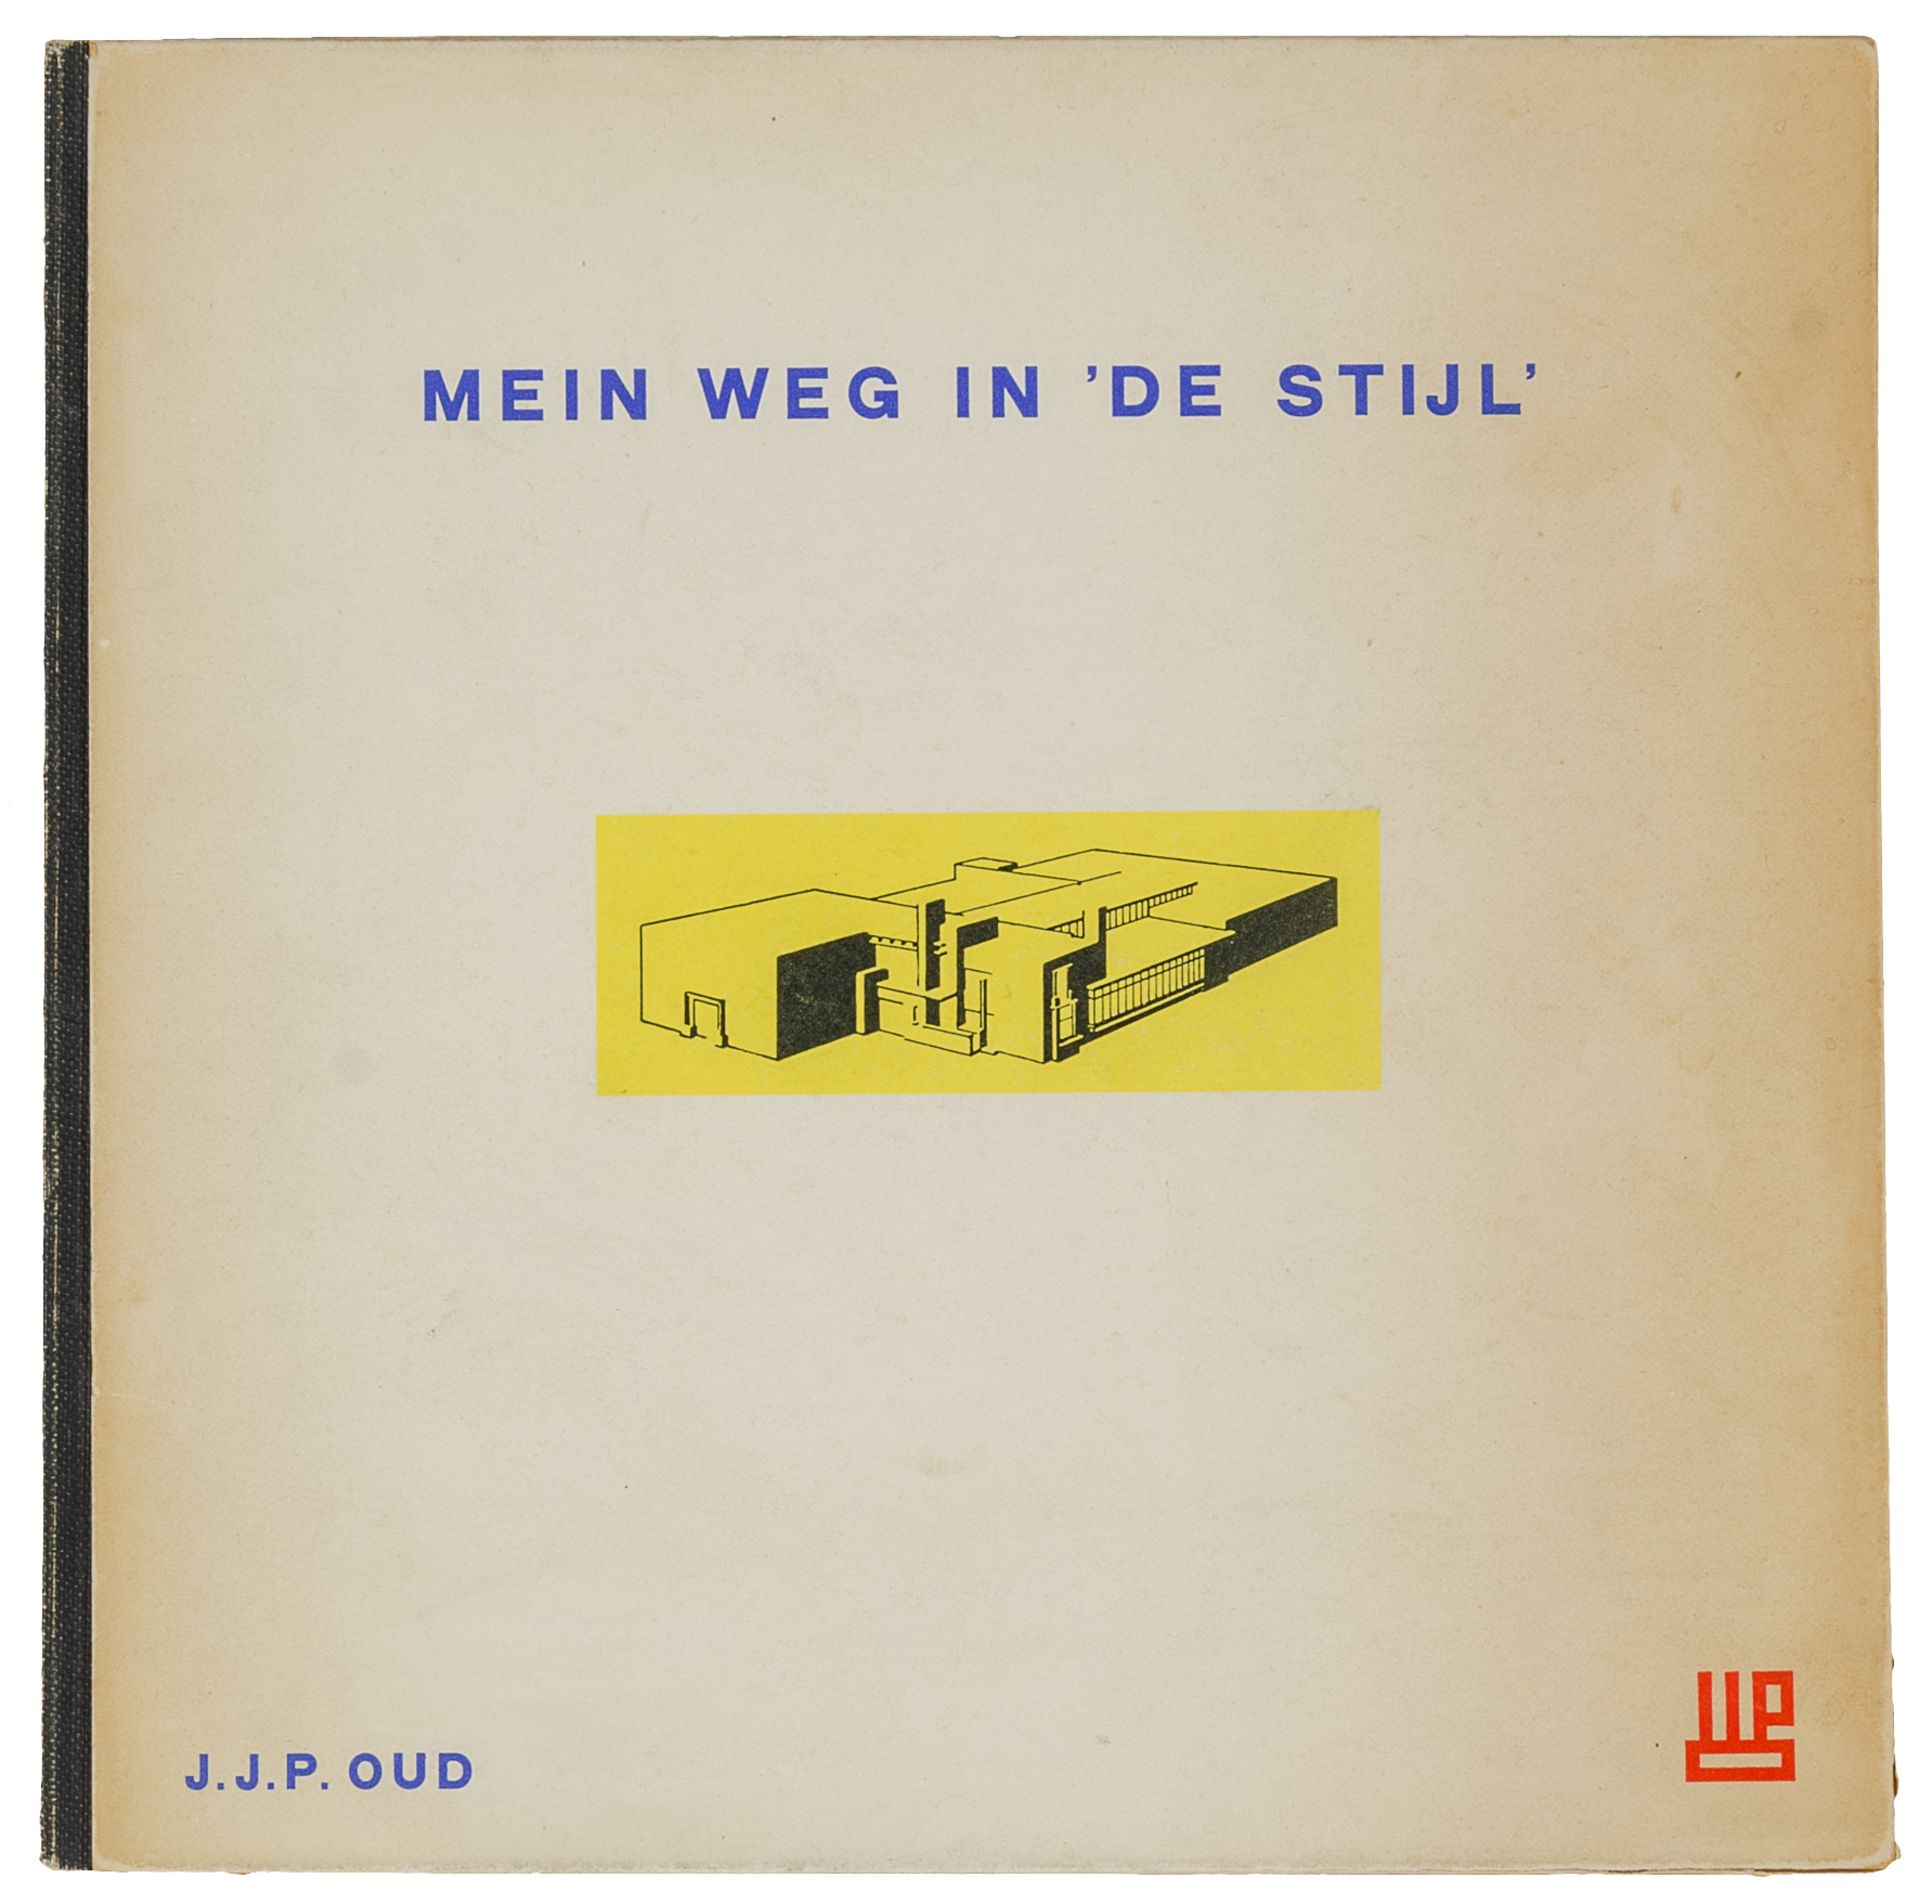 De Stijl - - Oud, J.J.P. Mein Weg in